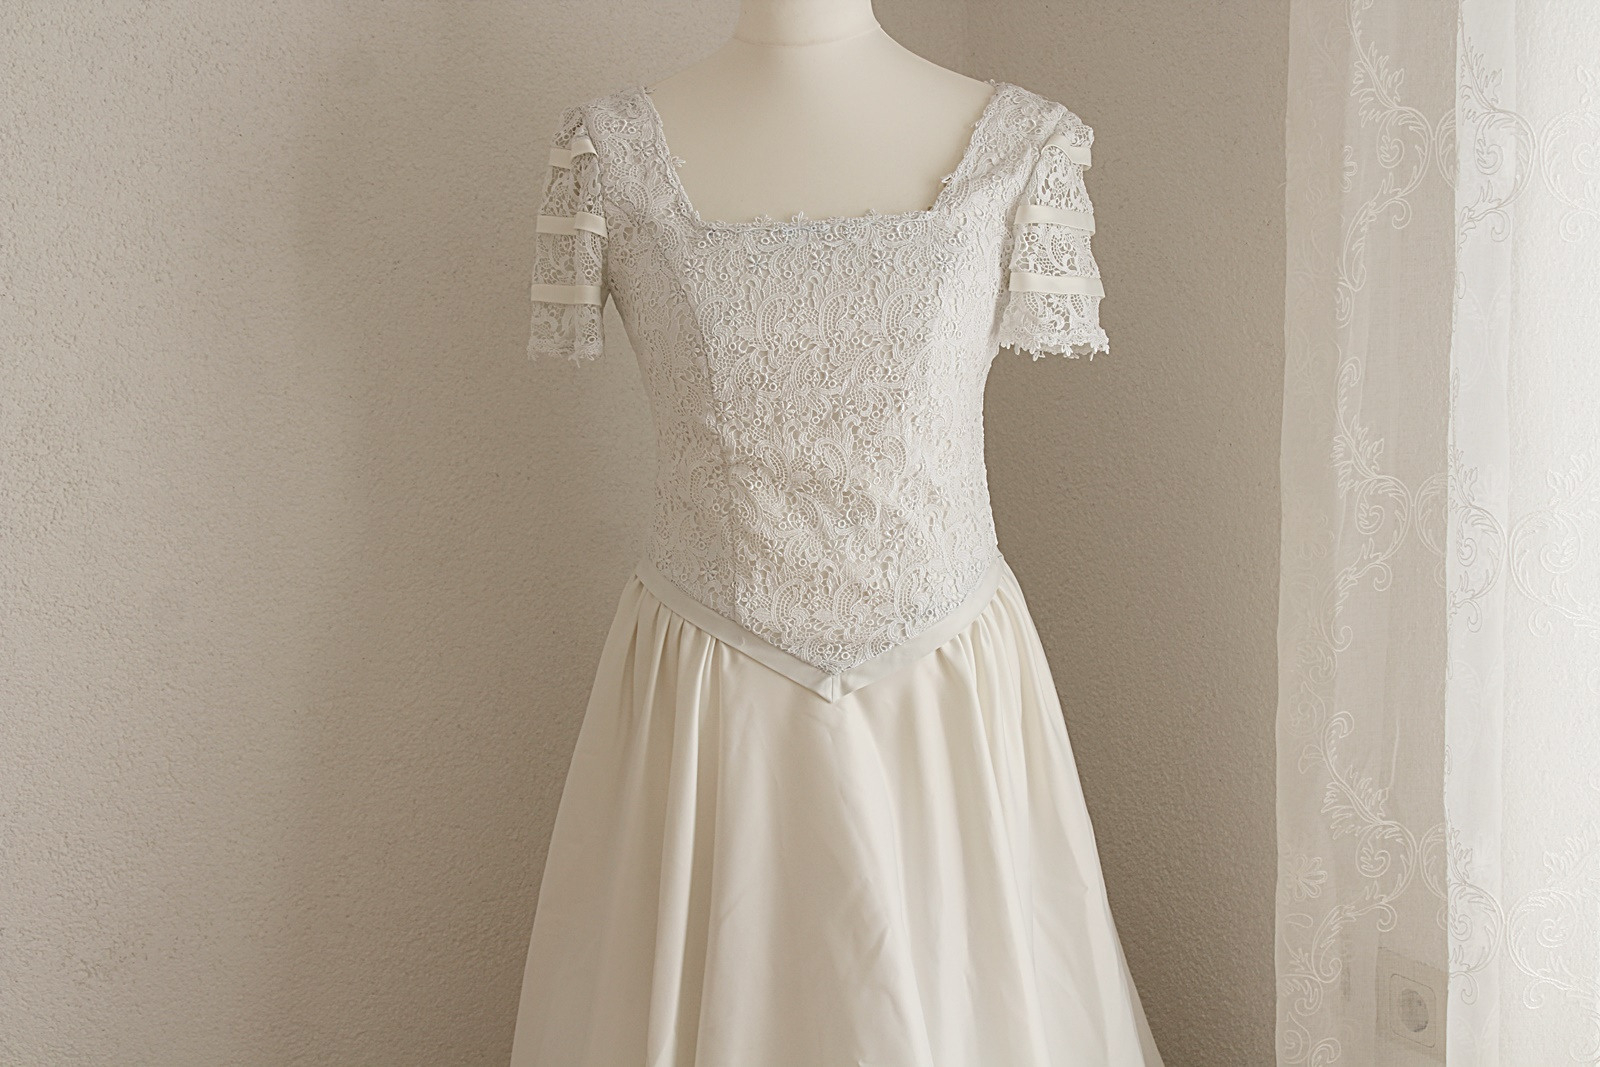 Weißes Langes Kleid Mit Spitze U Petticoat Gr 38